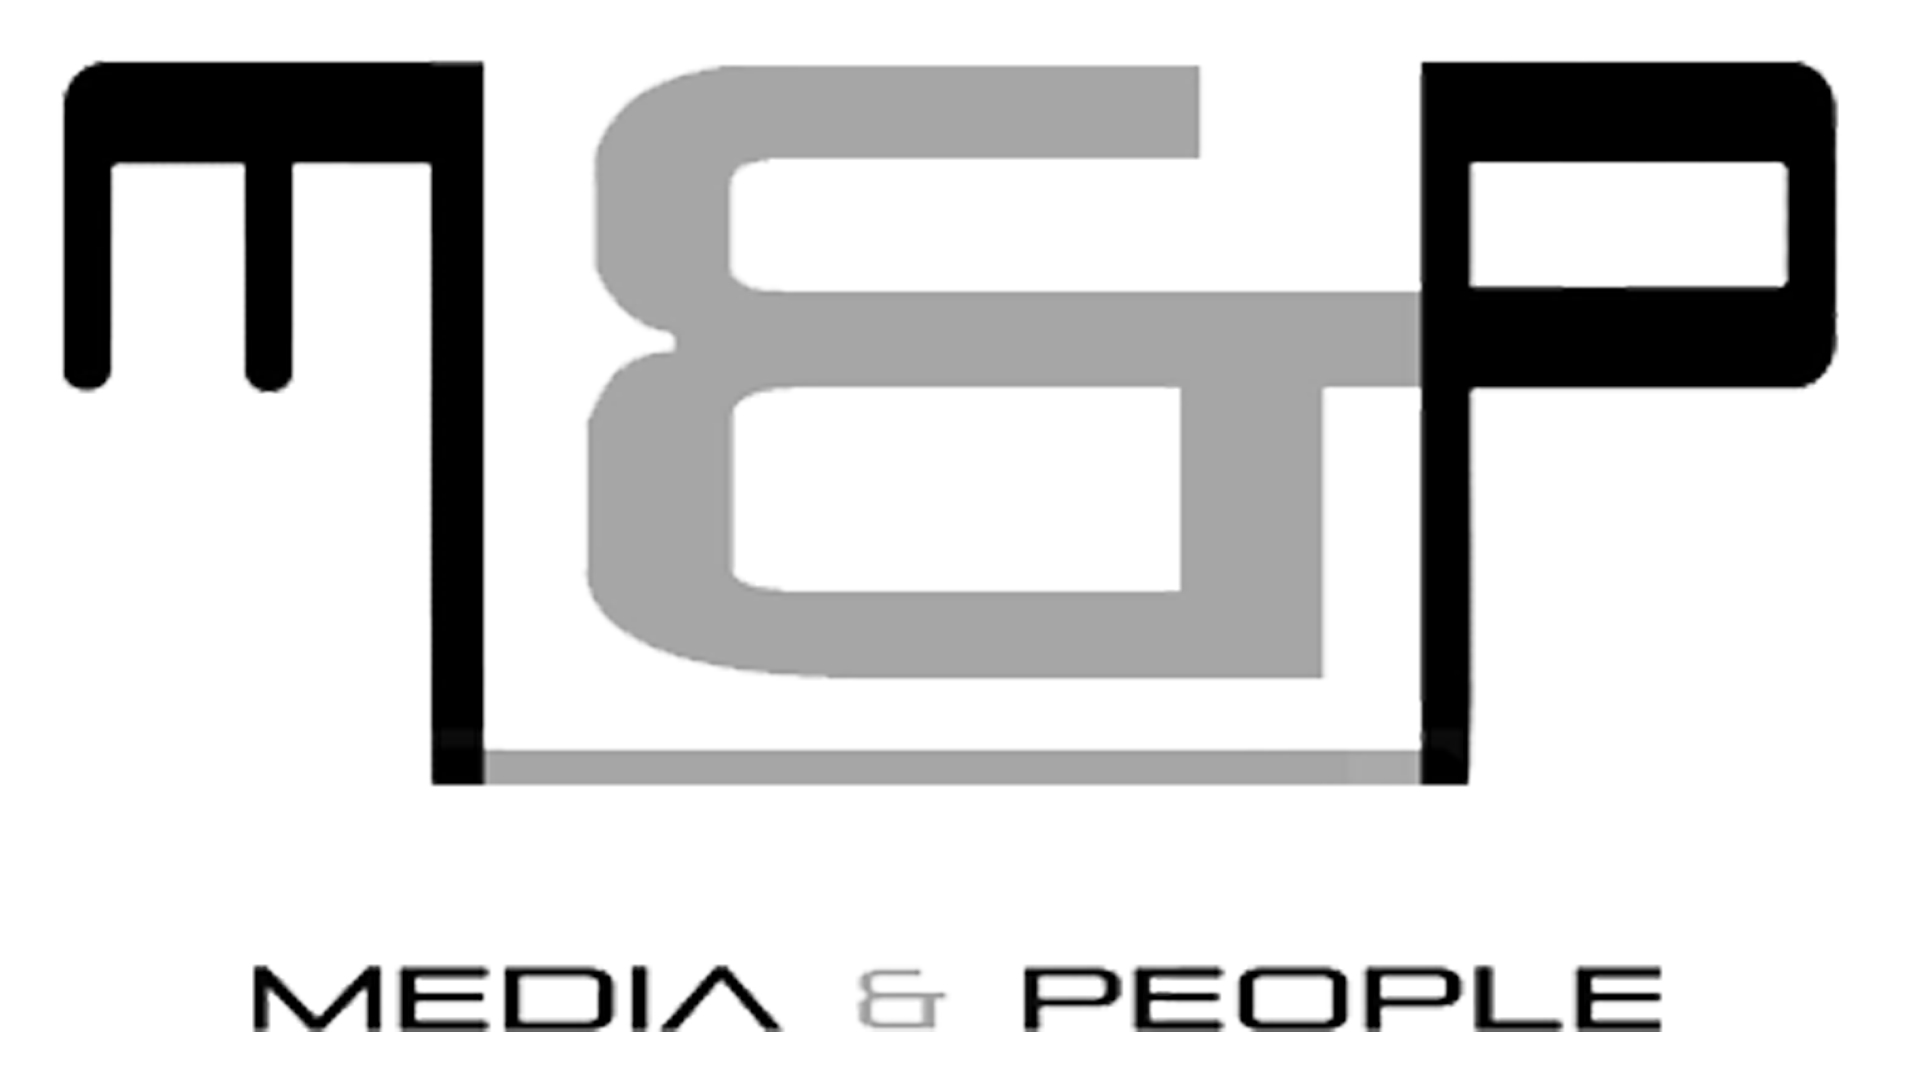 Media & People Inc.